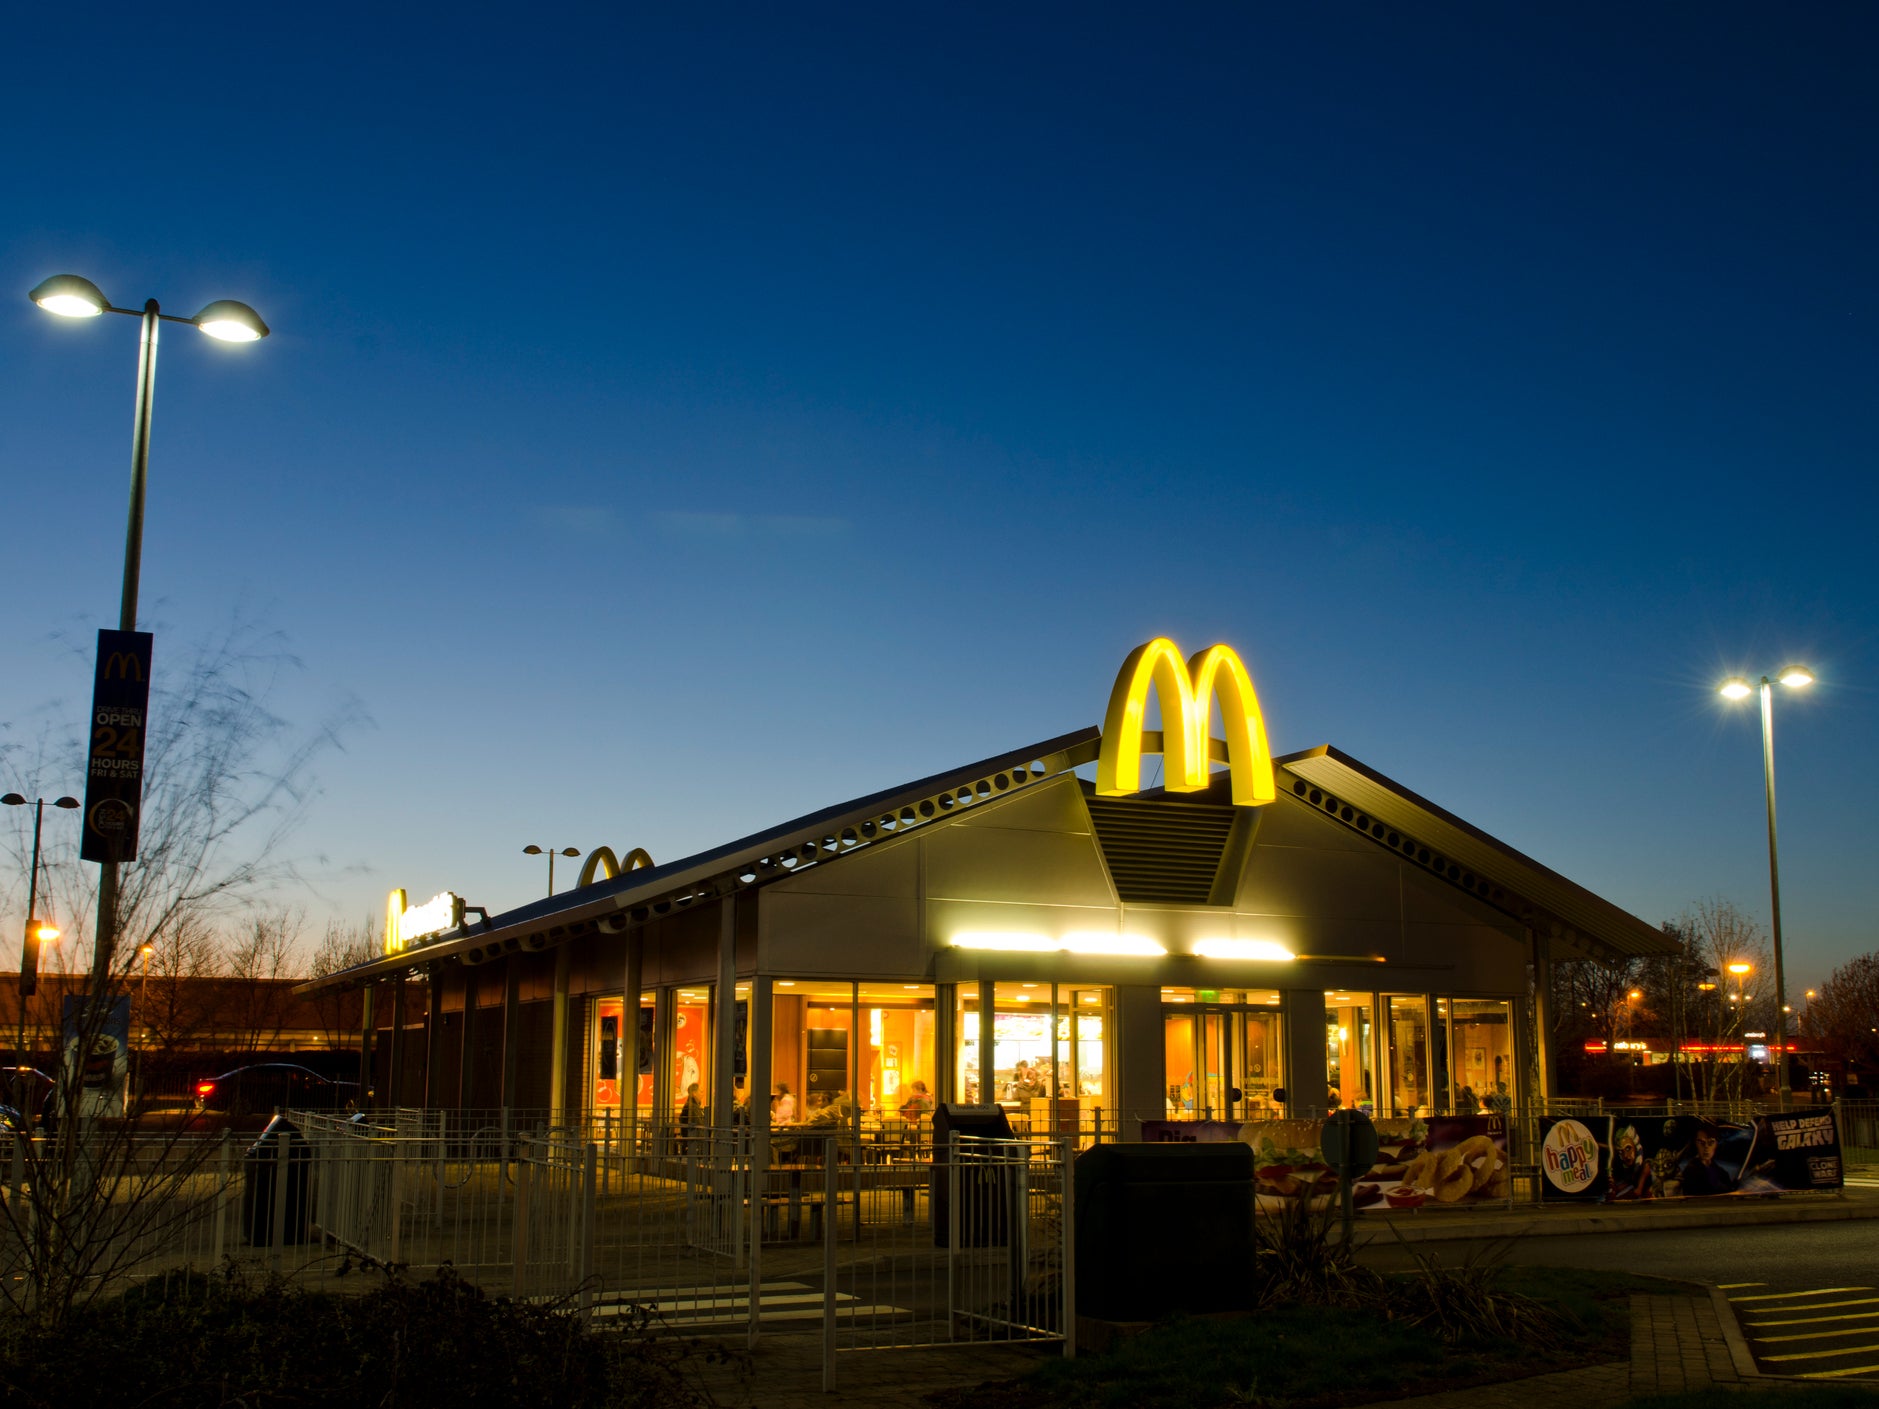 A drive-through McDonald’s in Weston-super-Mare